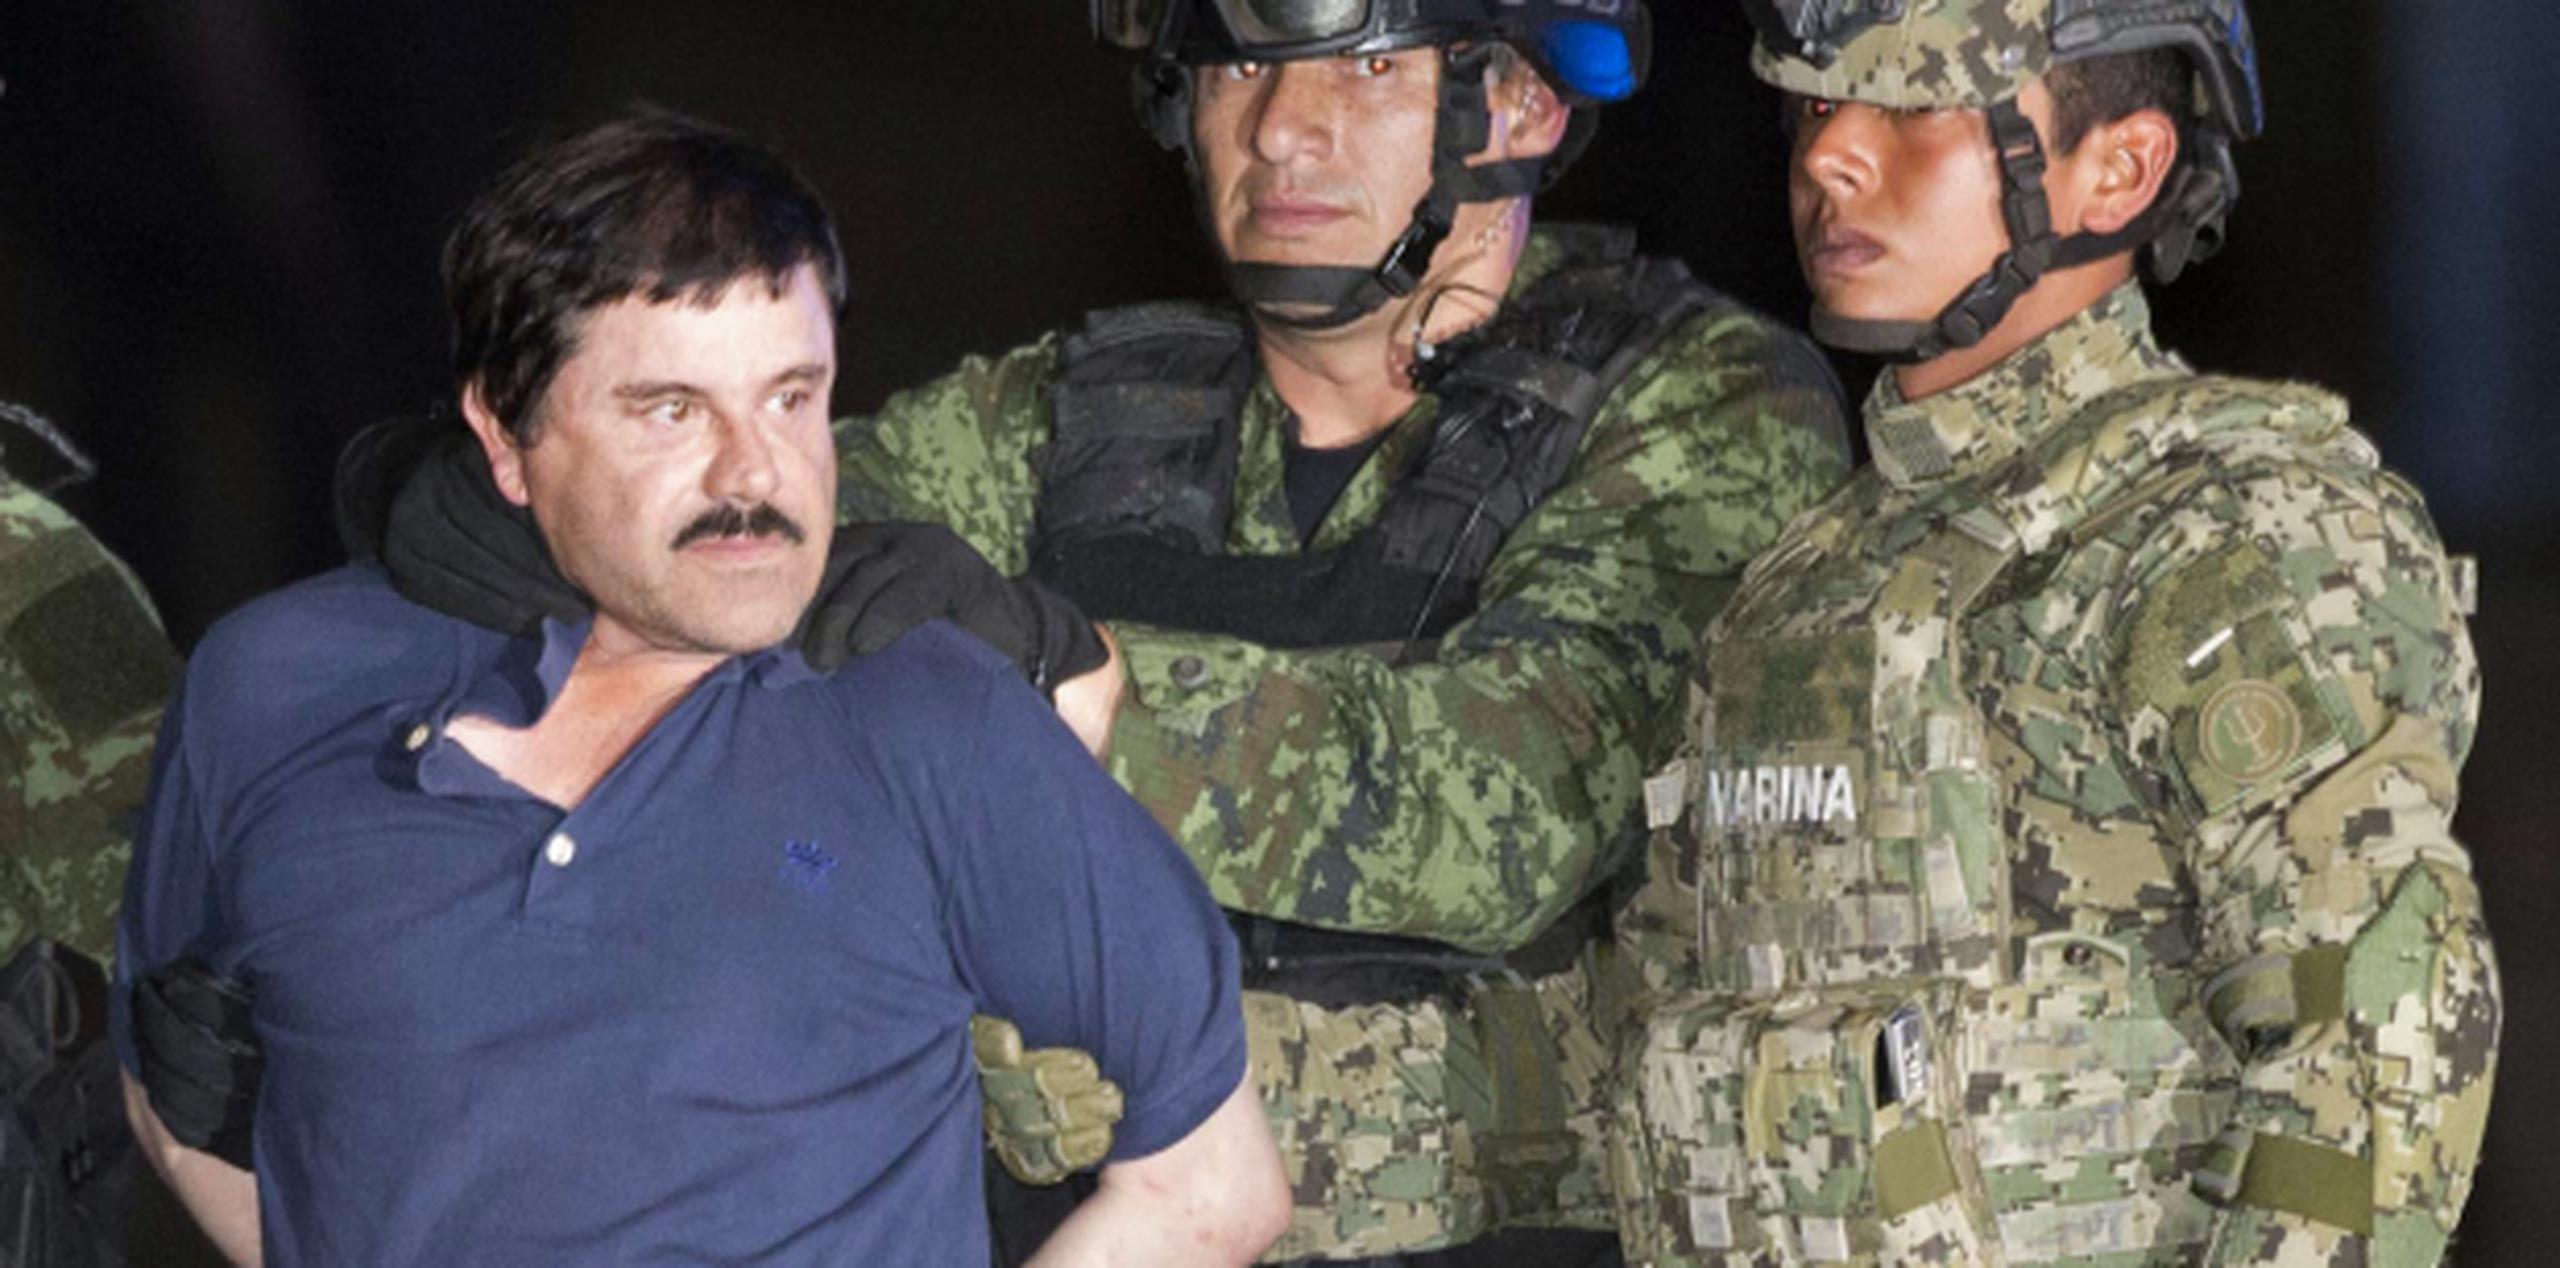 Chapo Guzmán mira a la prensa mientras es escoltado por militares mexicanos en ruta -nuevamente- a una prisión. (AP)